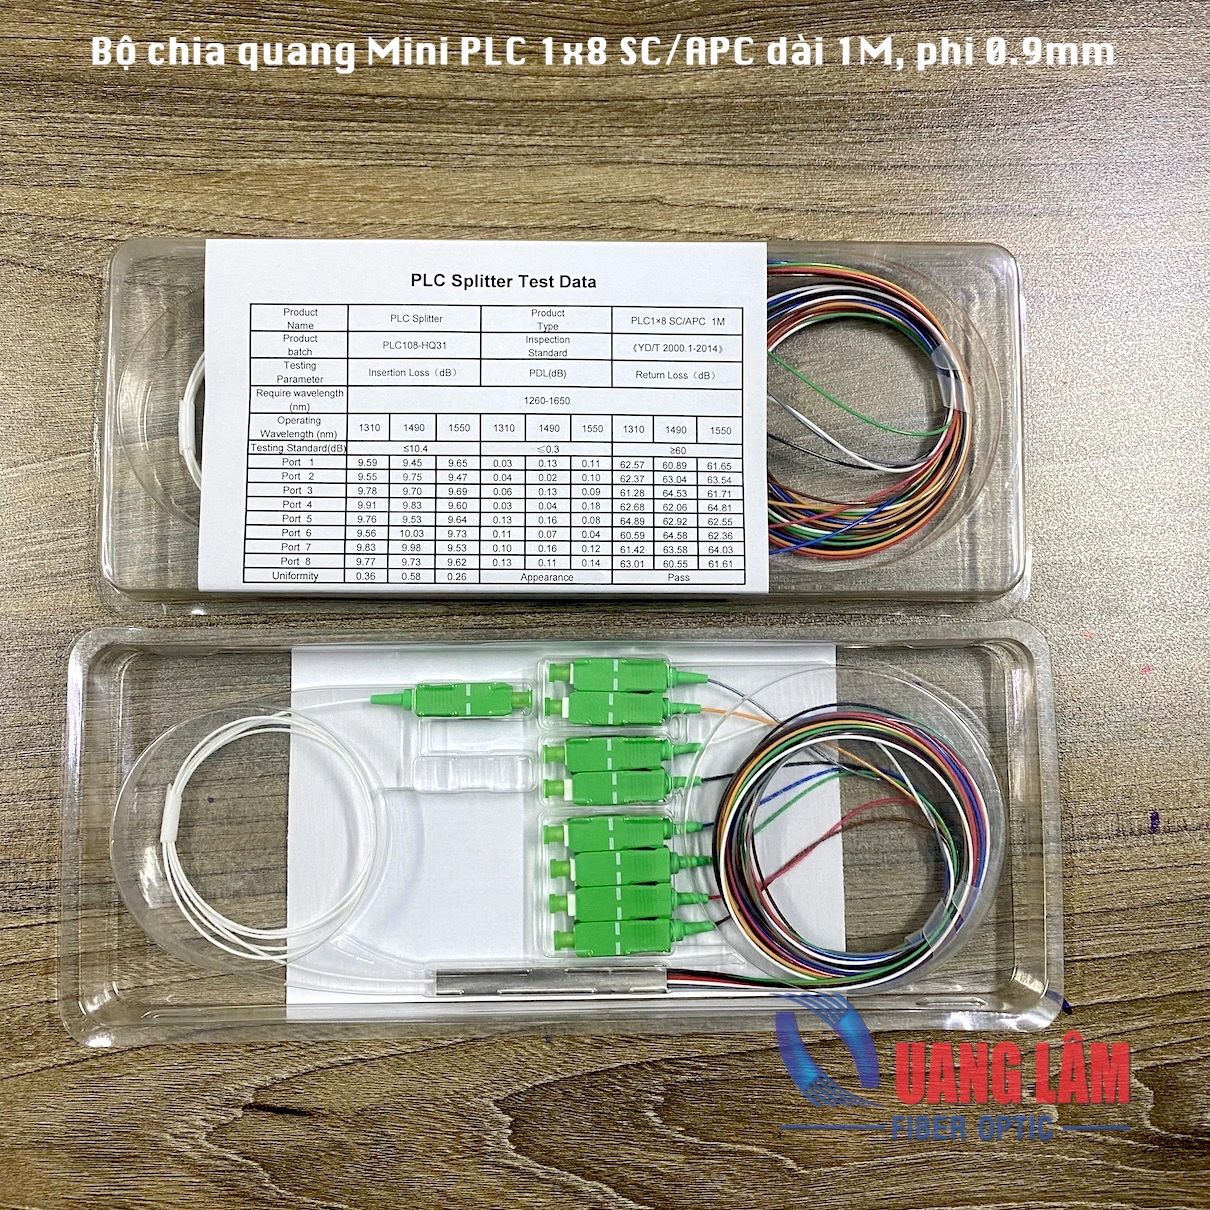 Bộ Chia Quang PLC 1x8 SC/APC Dài 1M (Mini PLC Splitter)